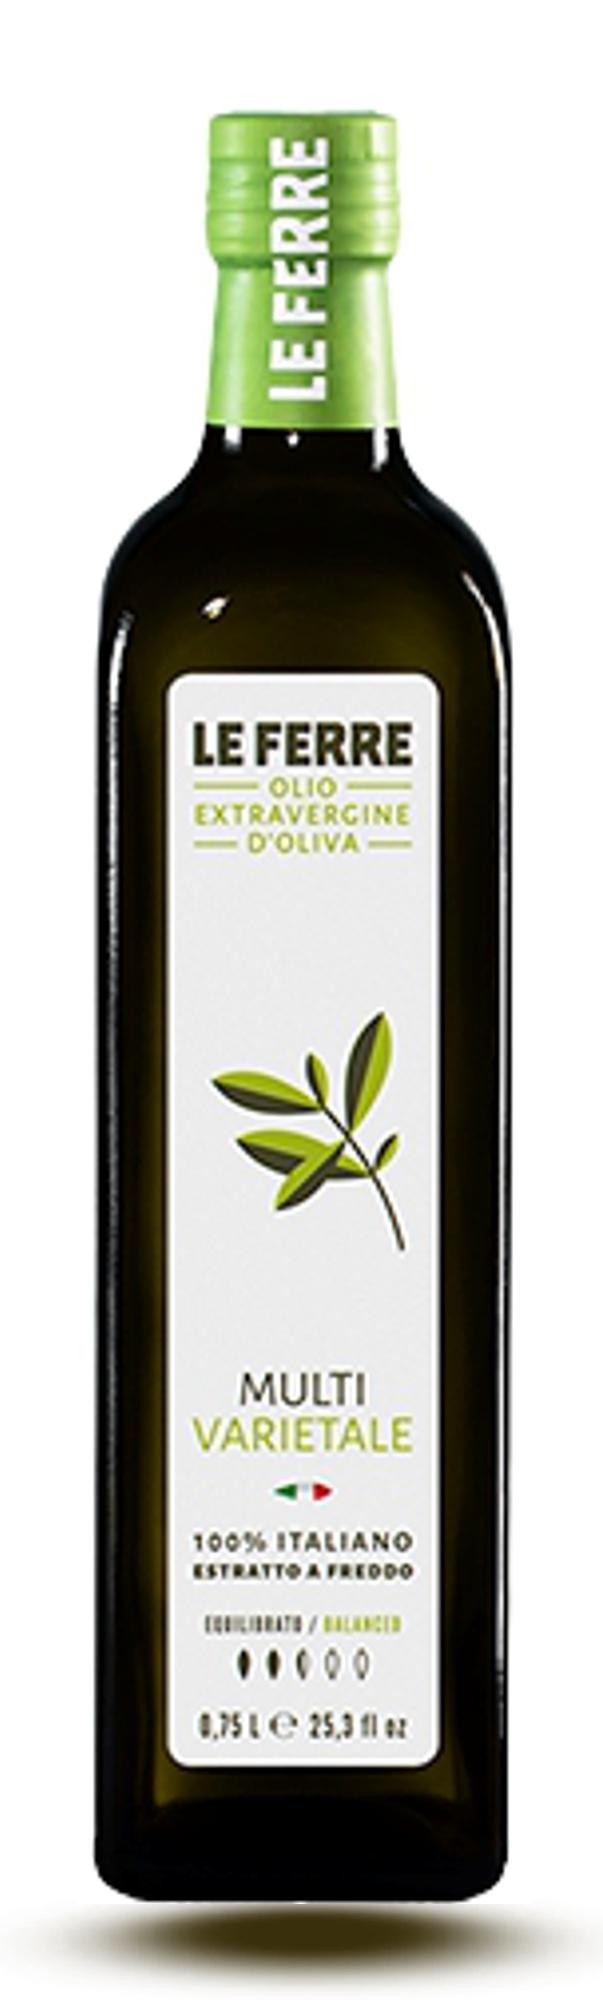 Le Ferre MULTIVARIETALE olio extravergine d'oliva 750 ml